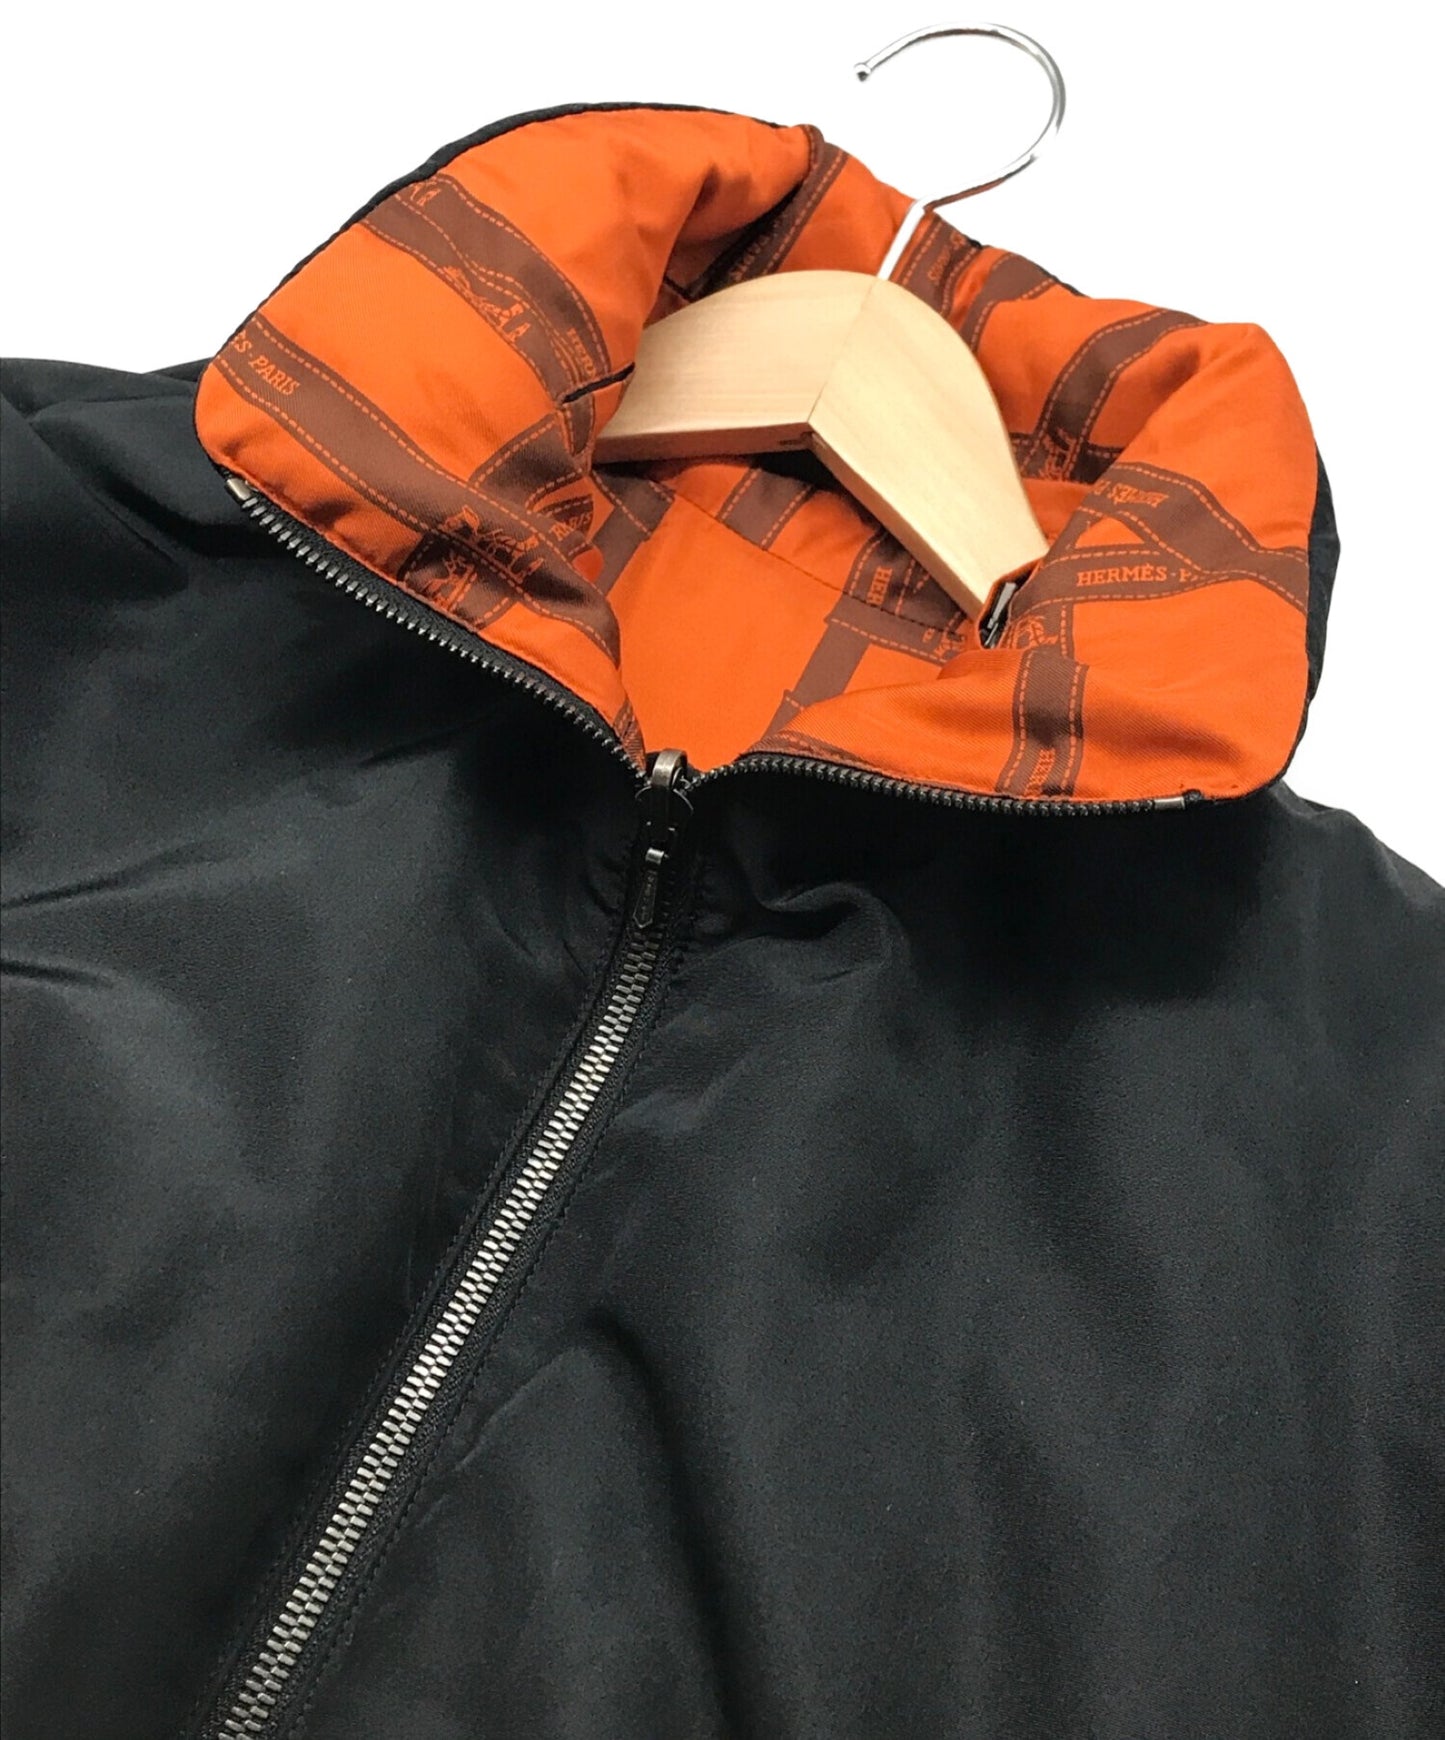 헤르메스의 마틴 마르지엘 라 리본 트윈리 패턴 실크 가역적 다운 재킷